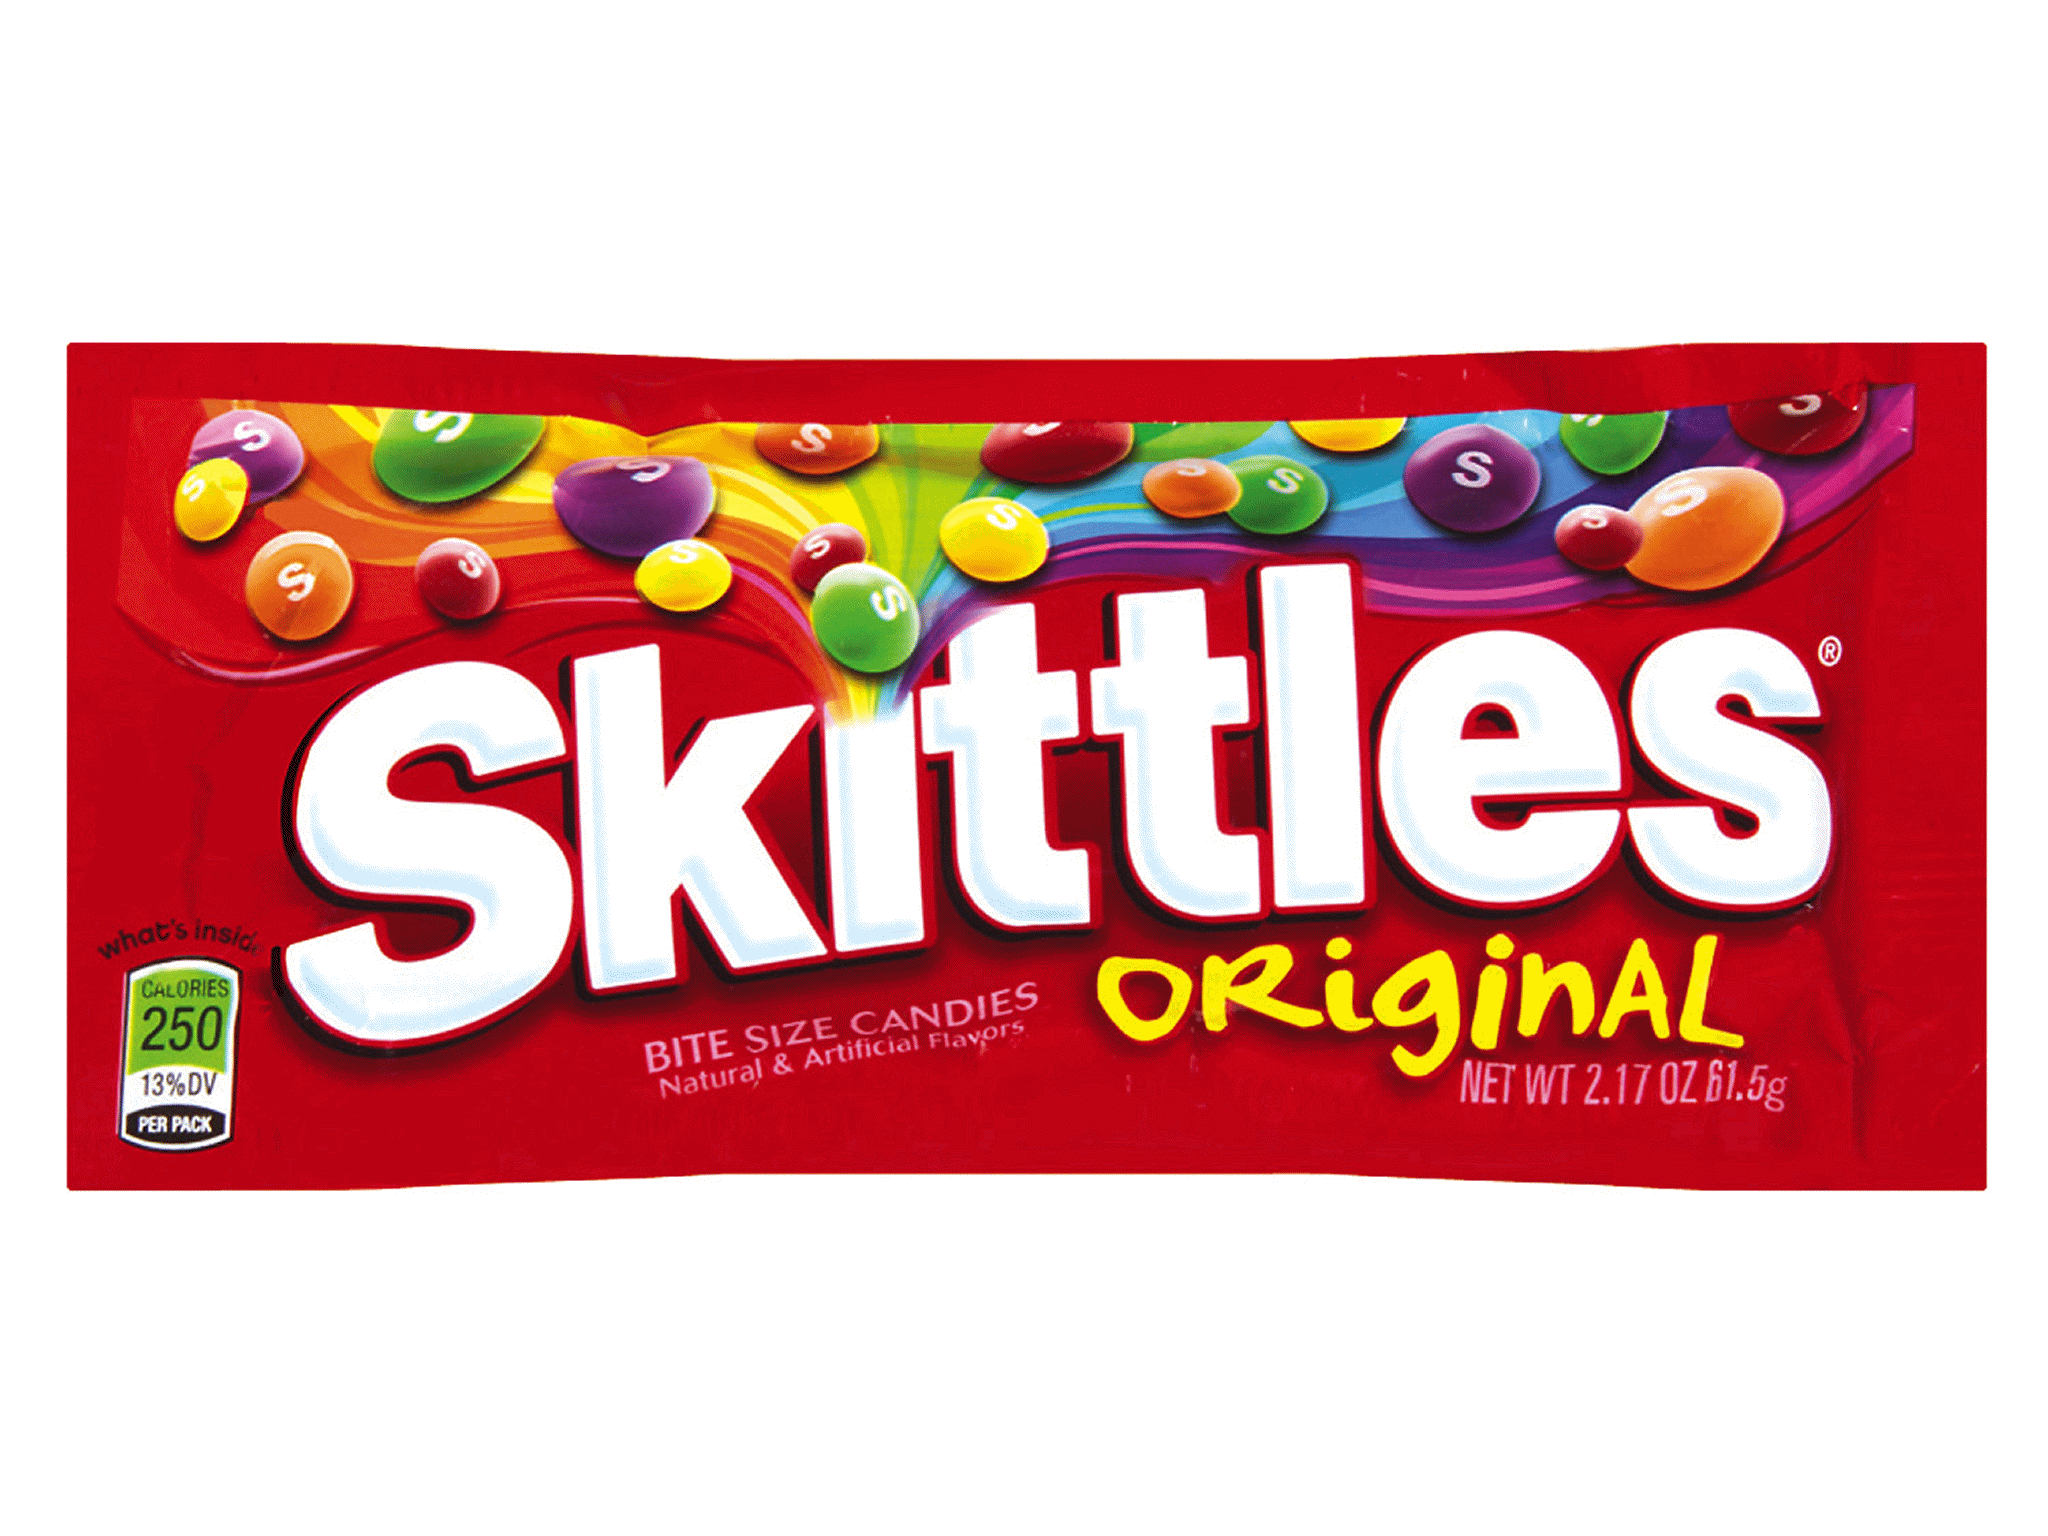 Skittles - Taste the Rainbow